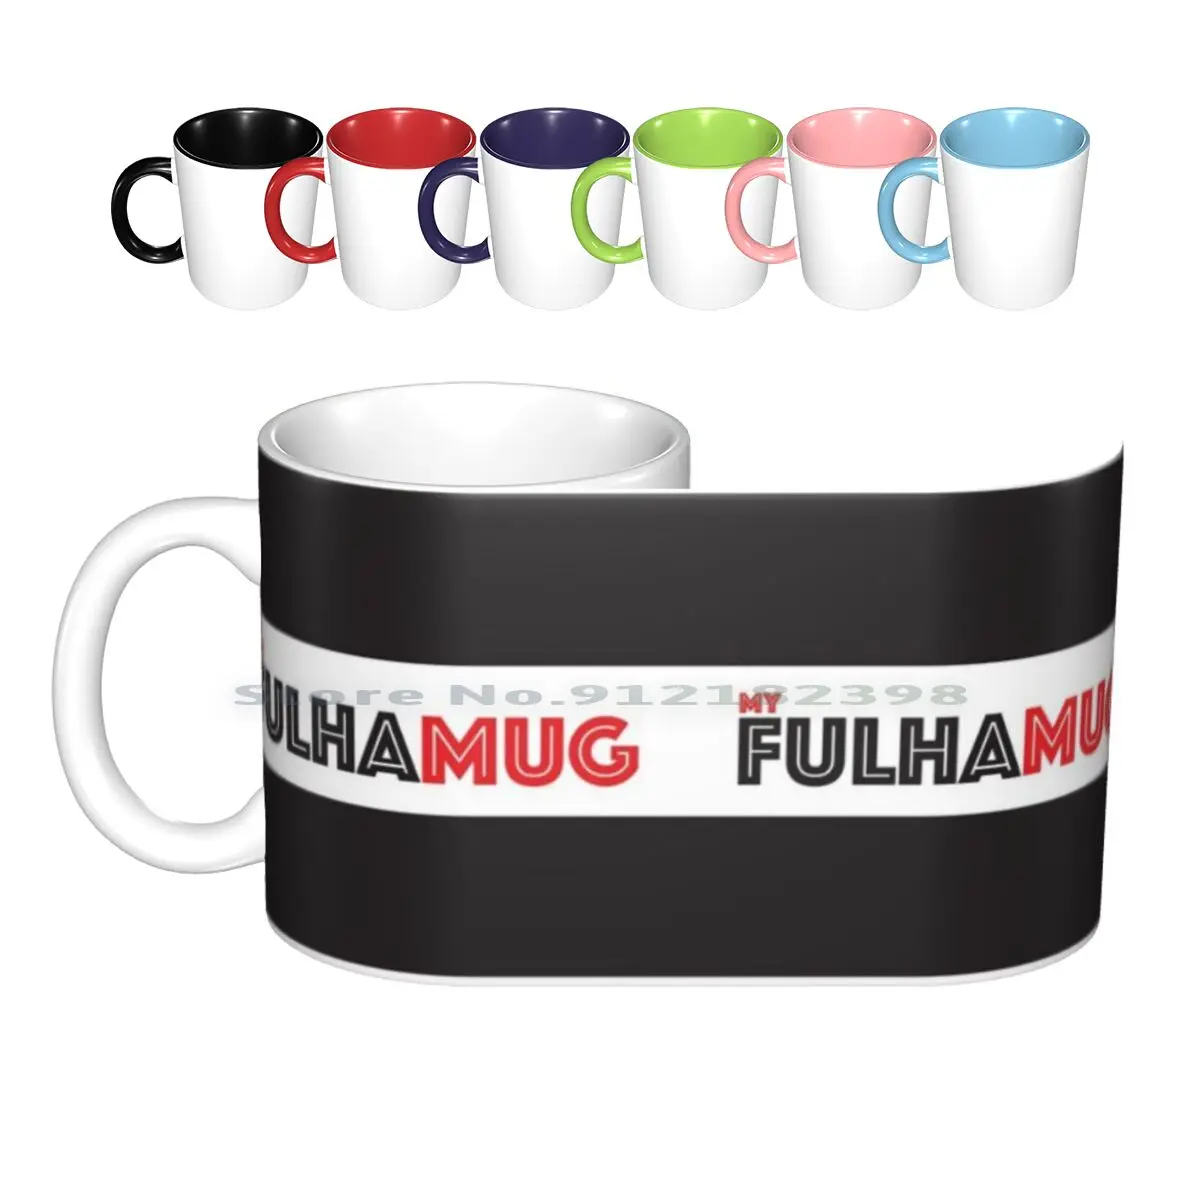 Football Club MUG Tea Tub Ceramic Tea Coffee Cup Mugs